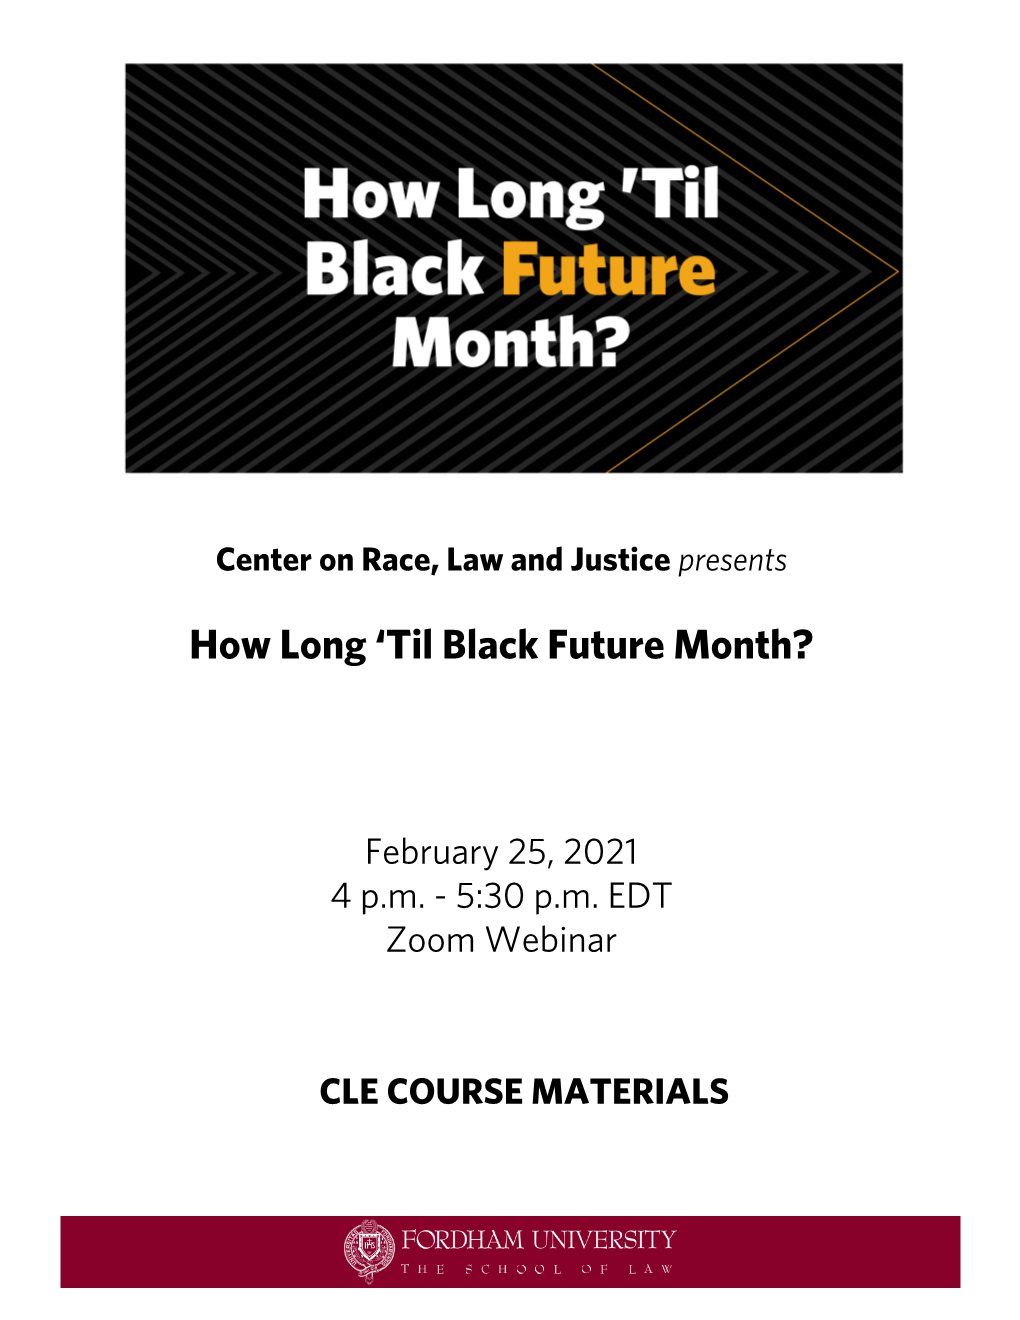 Black Future Month Materials